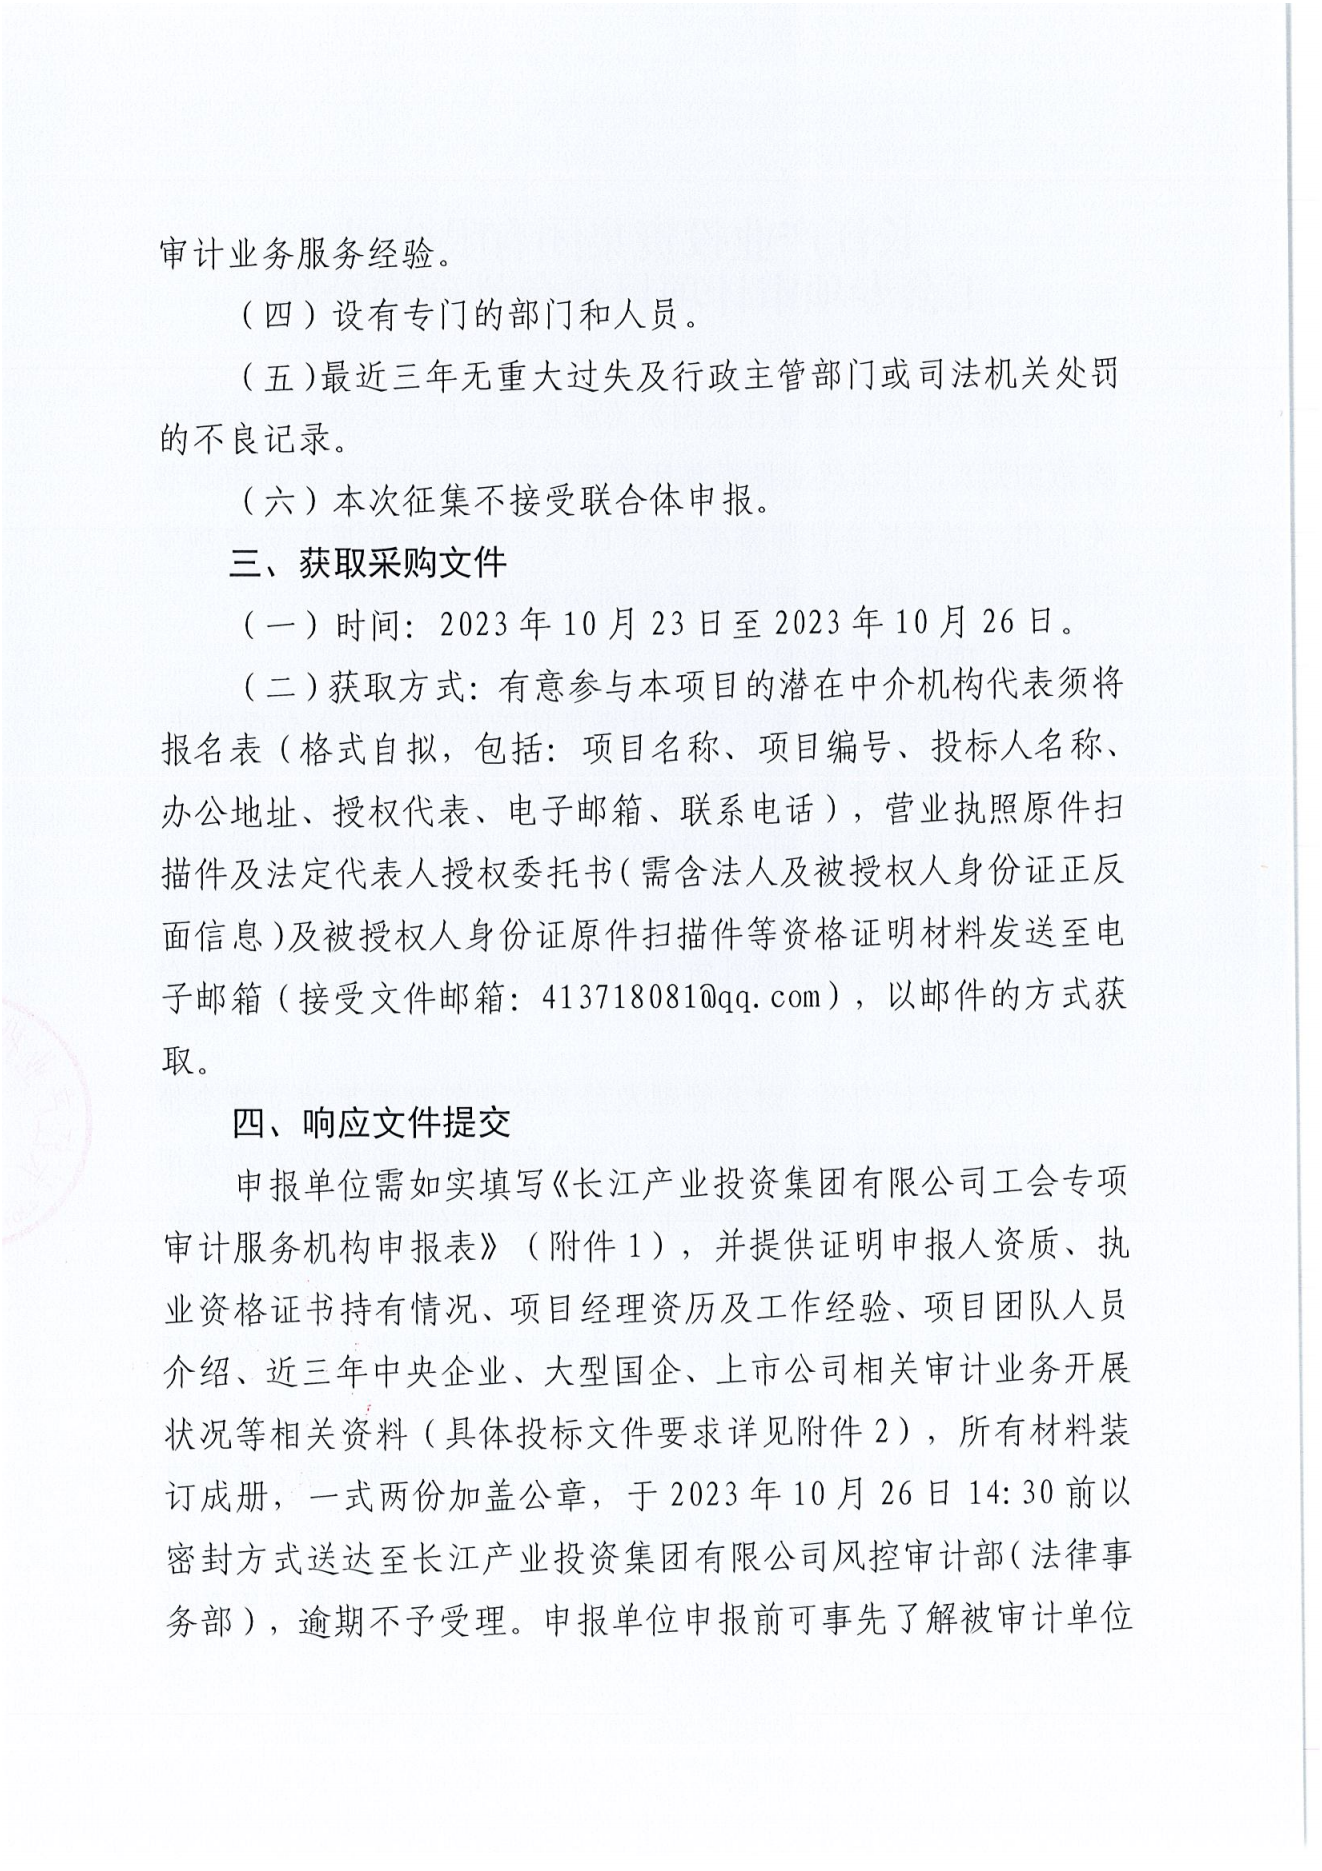 亚娱体育·(中国)官方网站工会专项审计项目竞争性磋商公告_01.png